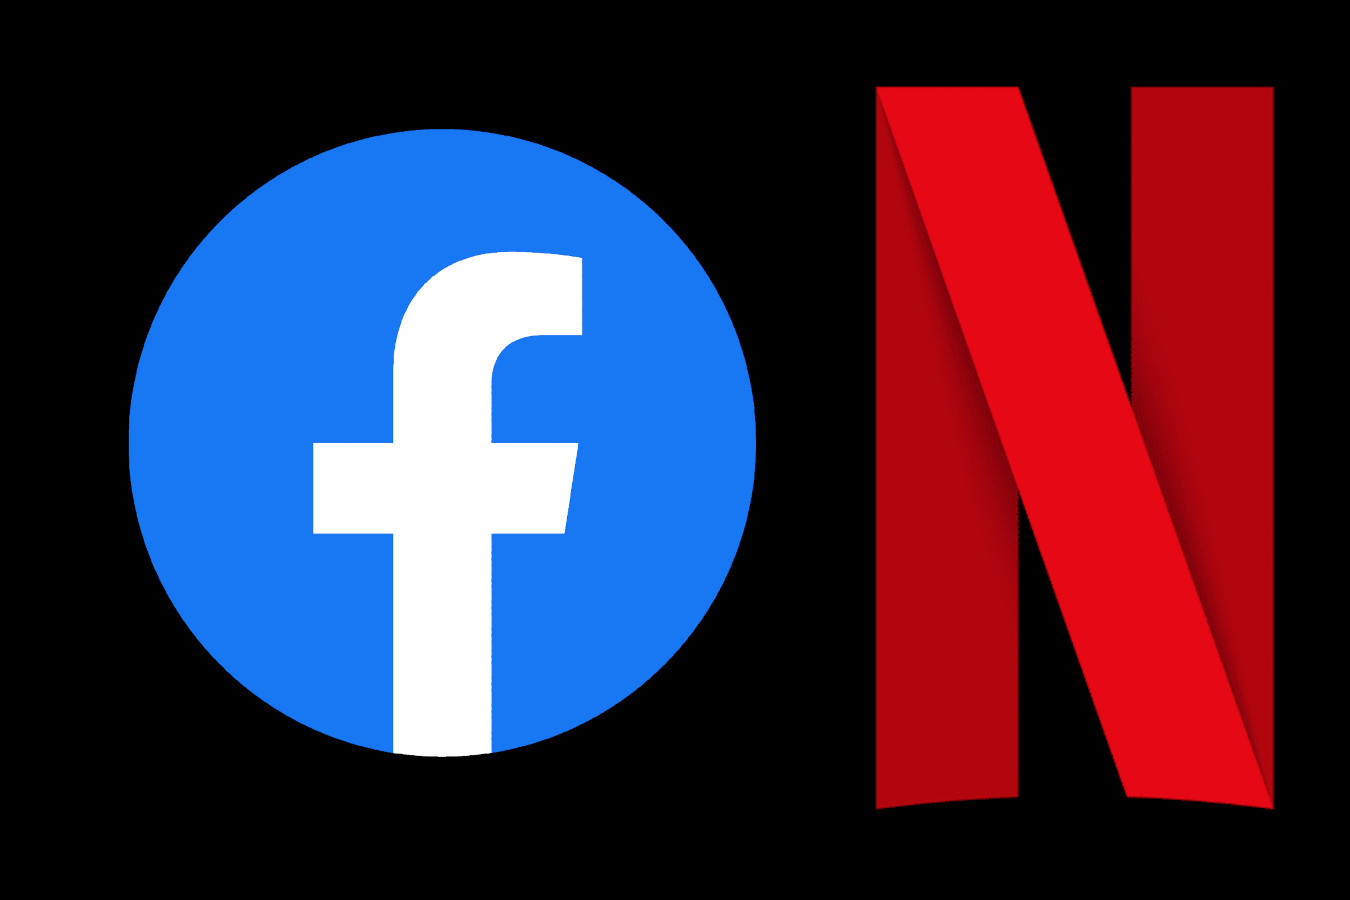 Facebook âm thầm bán tin nhắn người dùng cho Netflix hàng thập kỷ